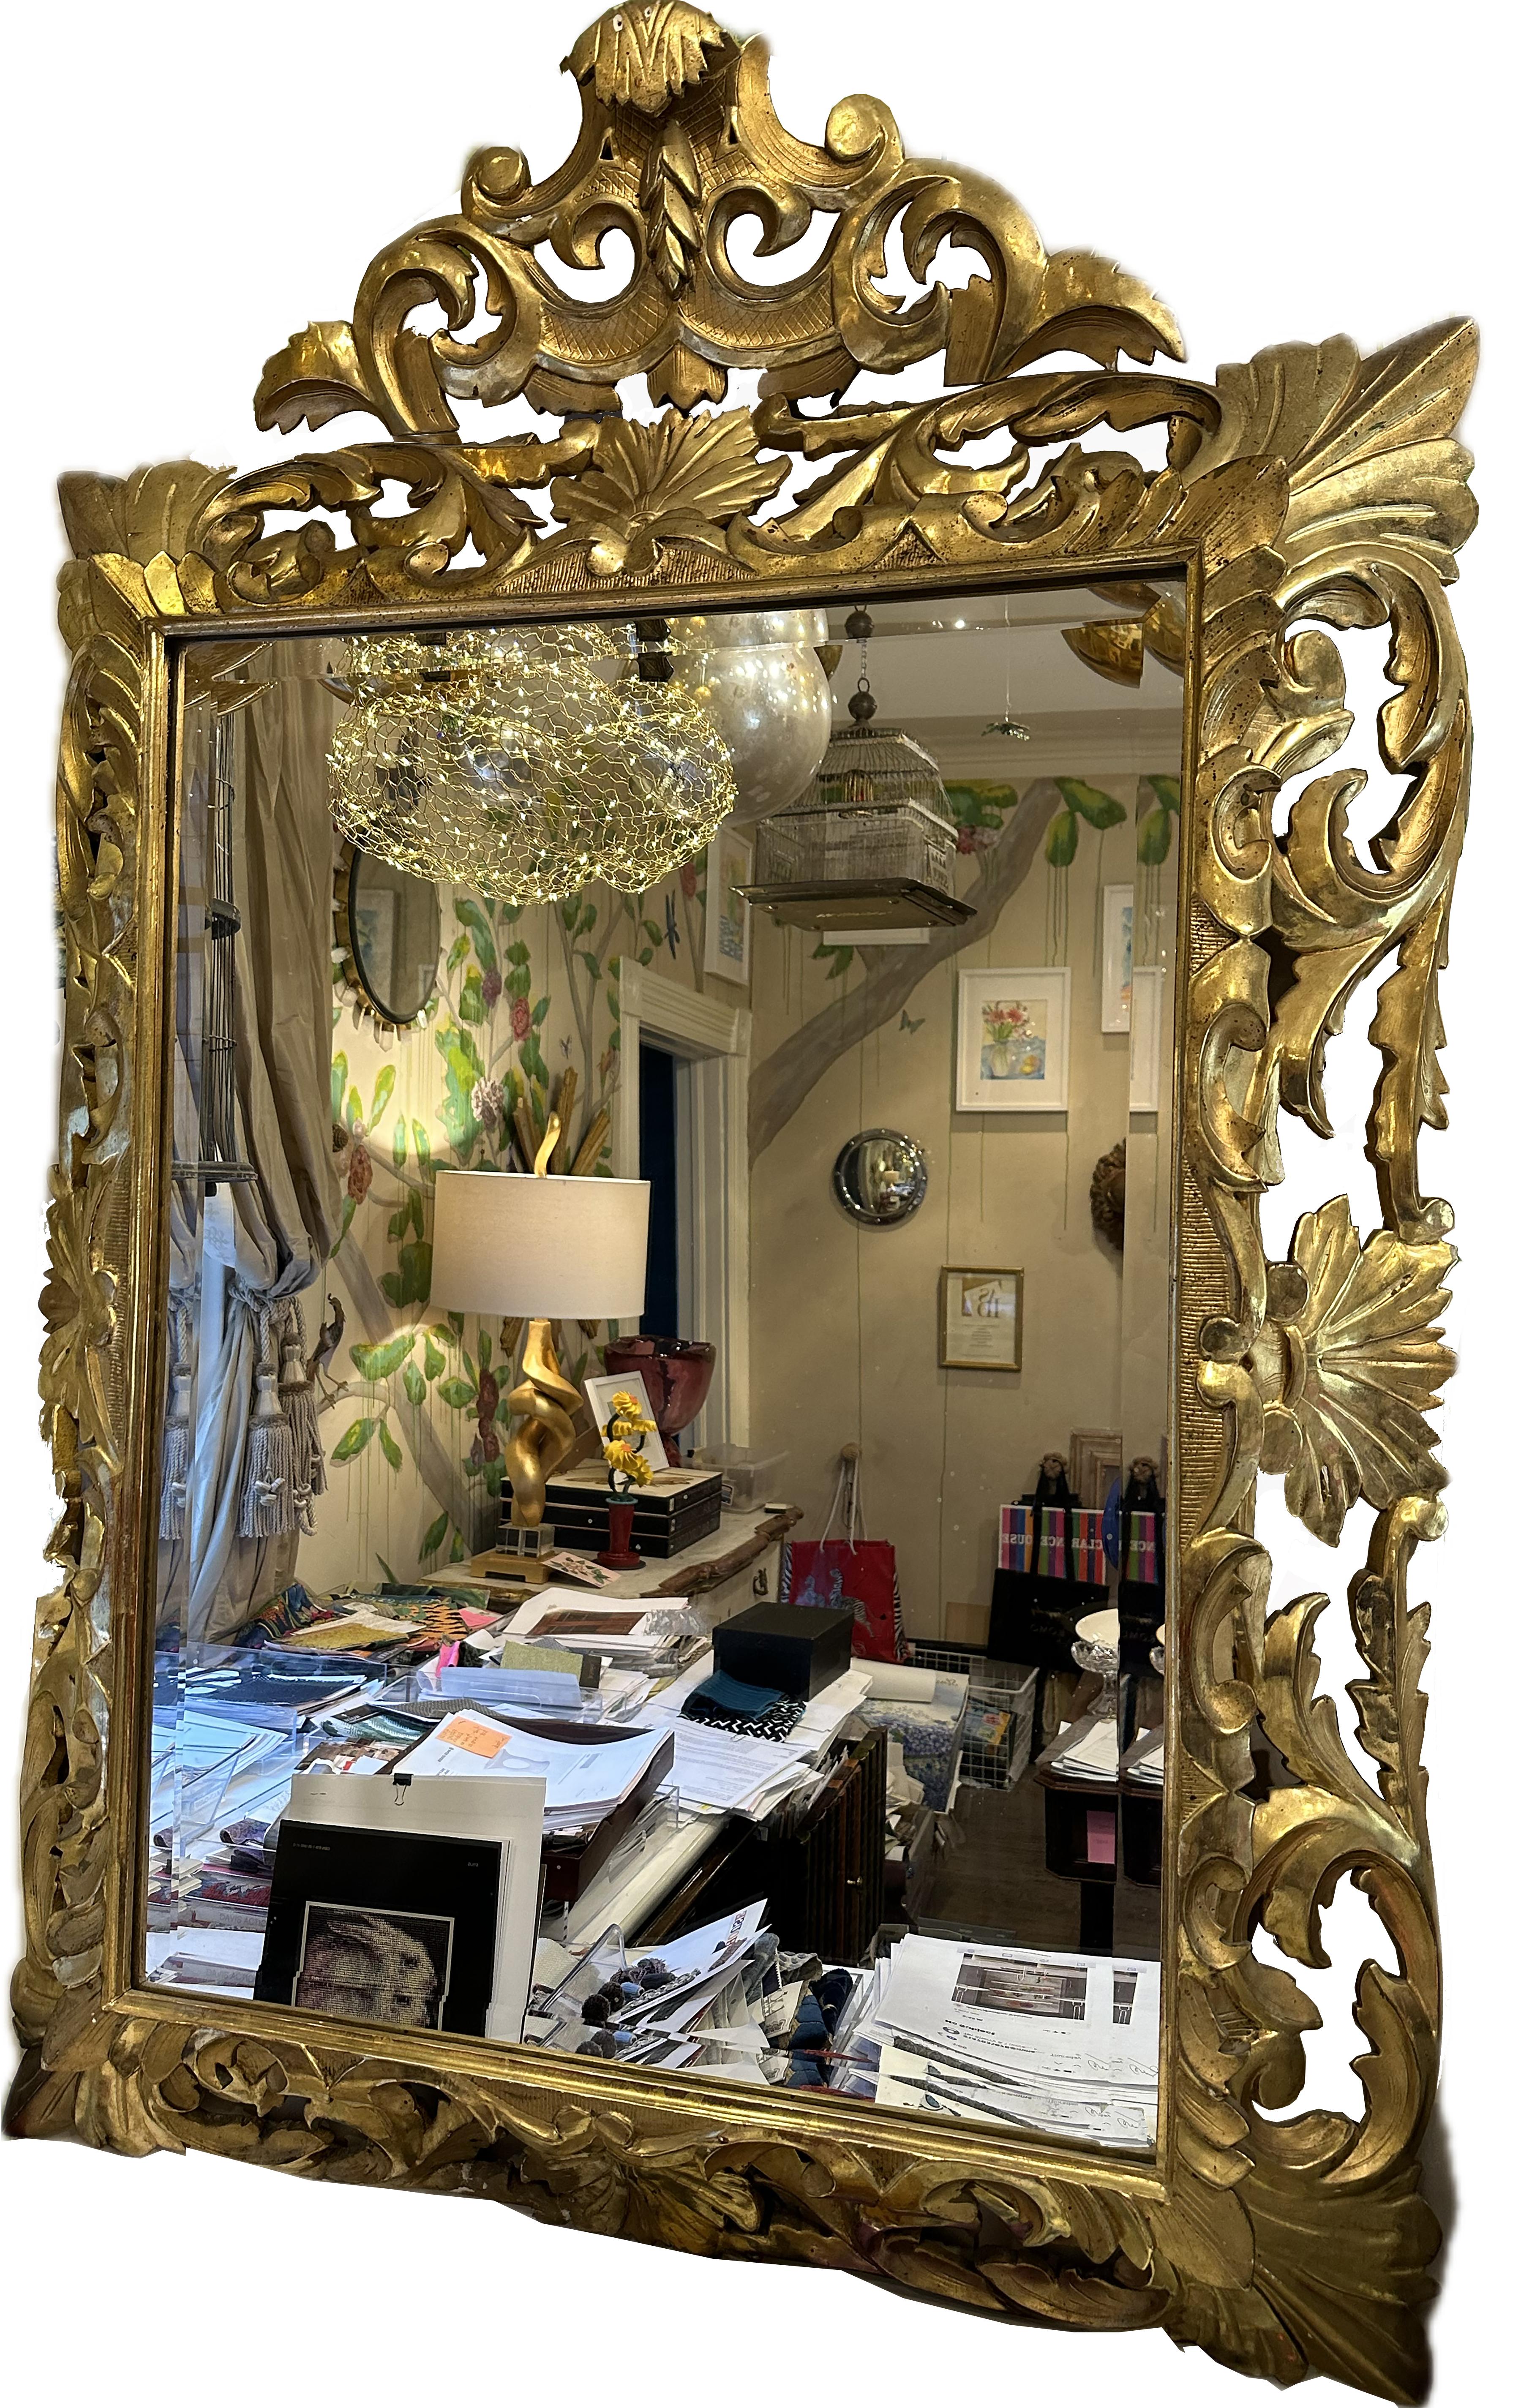 Une paire d'élégants miroirs biseautés antiques italiens dorés au mercure. Sculpture ventilée finement détaillée et feuilles d'acanthe dorées sur tout le pourtour du cadre extérieur. Vers le 17e - 18e siècle.

En très bon état. Légère usure due à